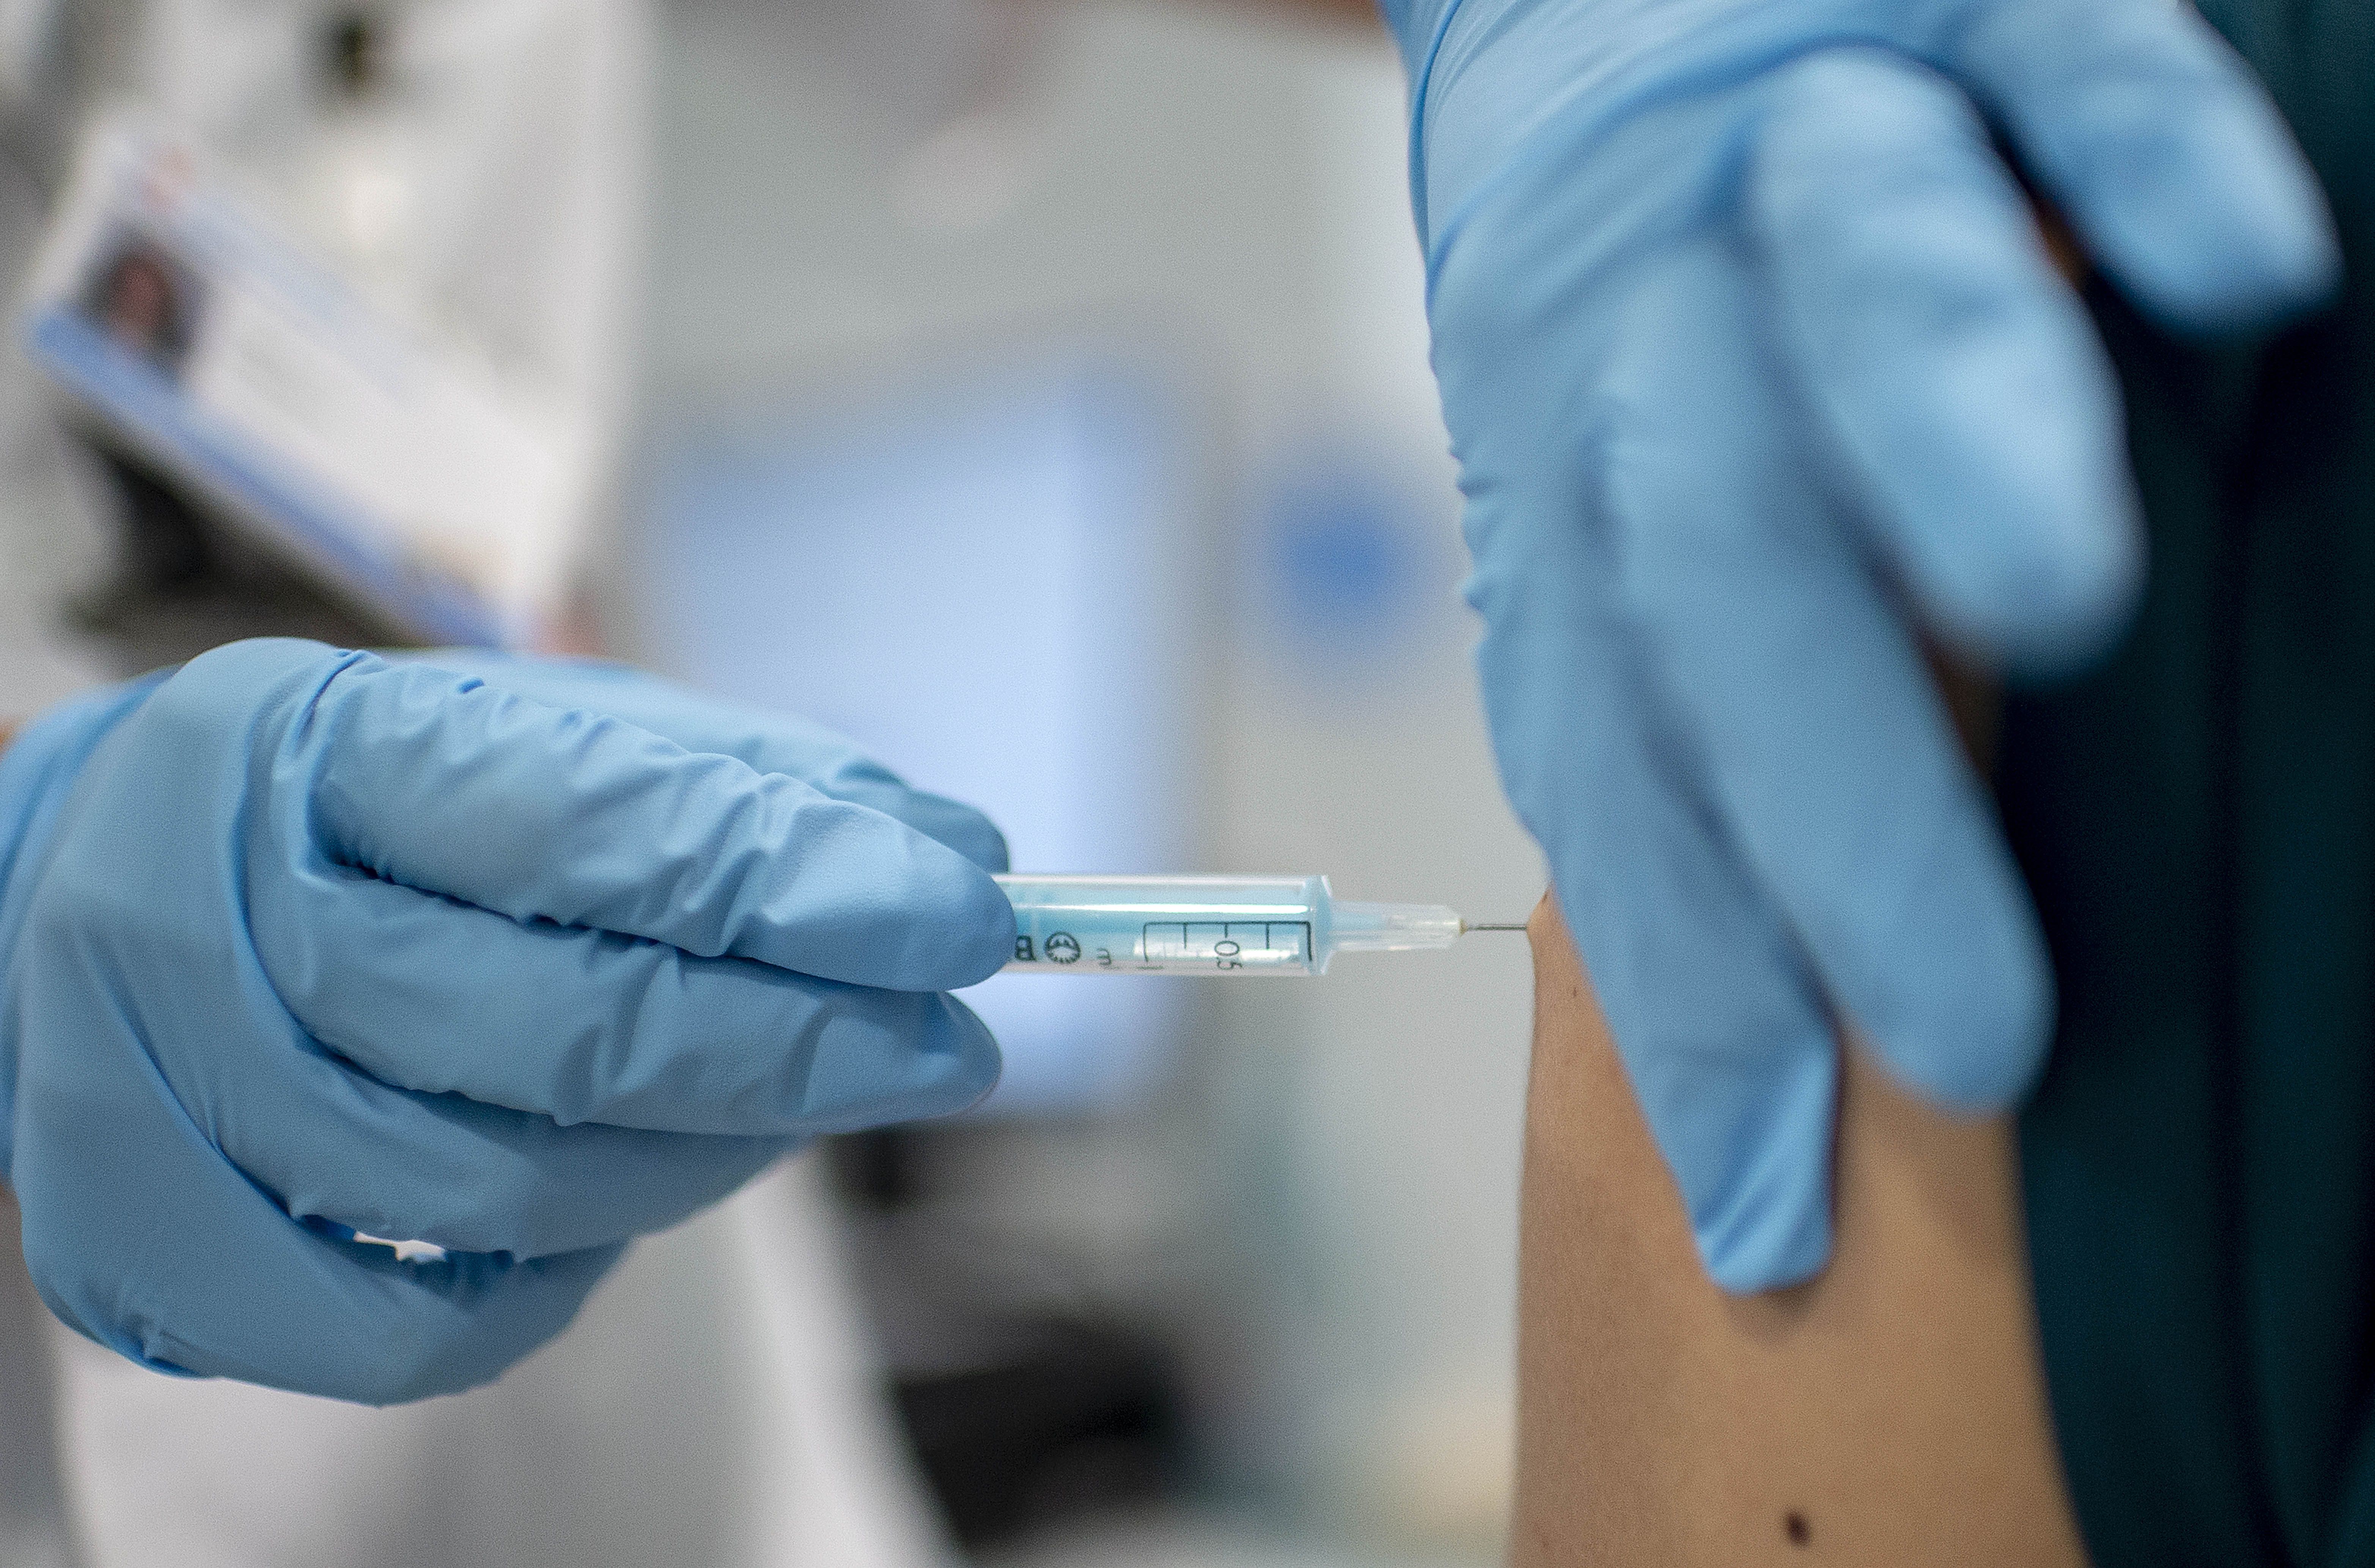 La OMS no apoya la tercera dosis de la vacuna: "No hay datos que lo justifiquen de momento". Foto: Europa Press